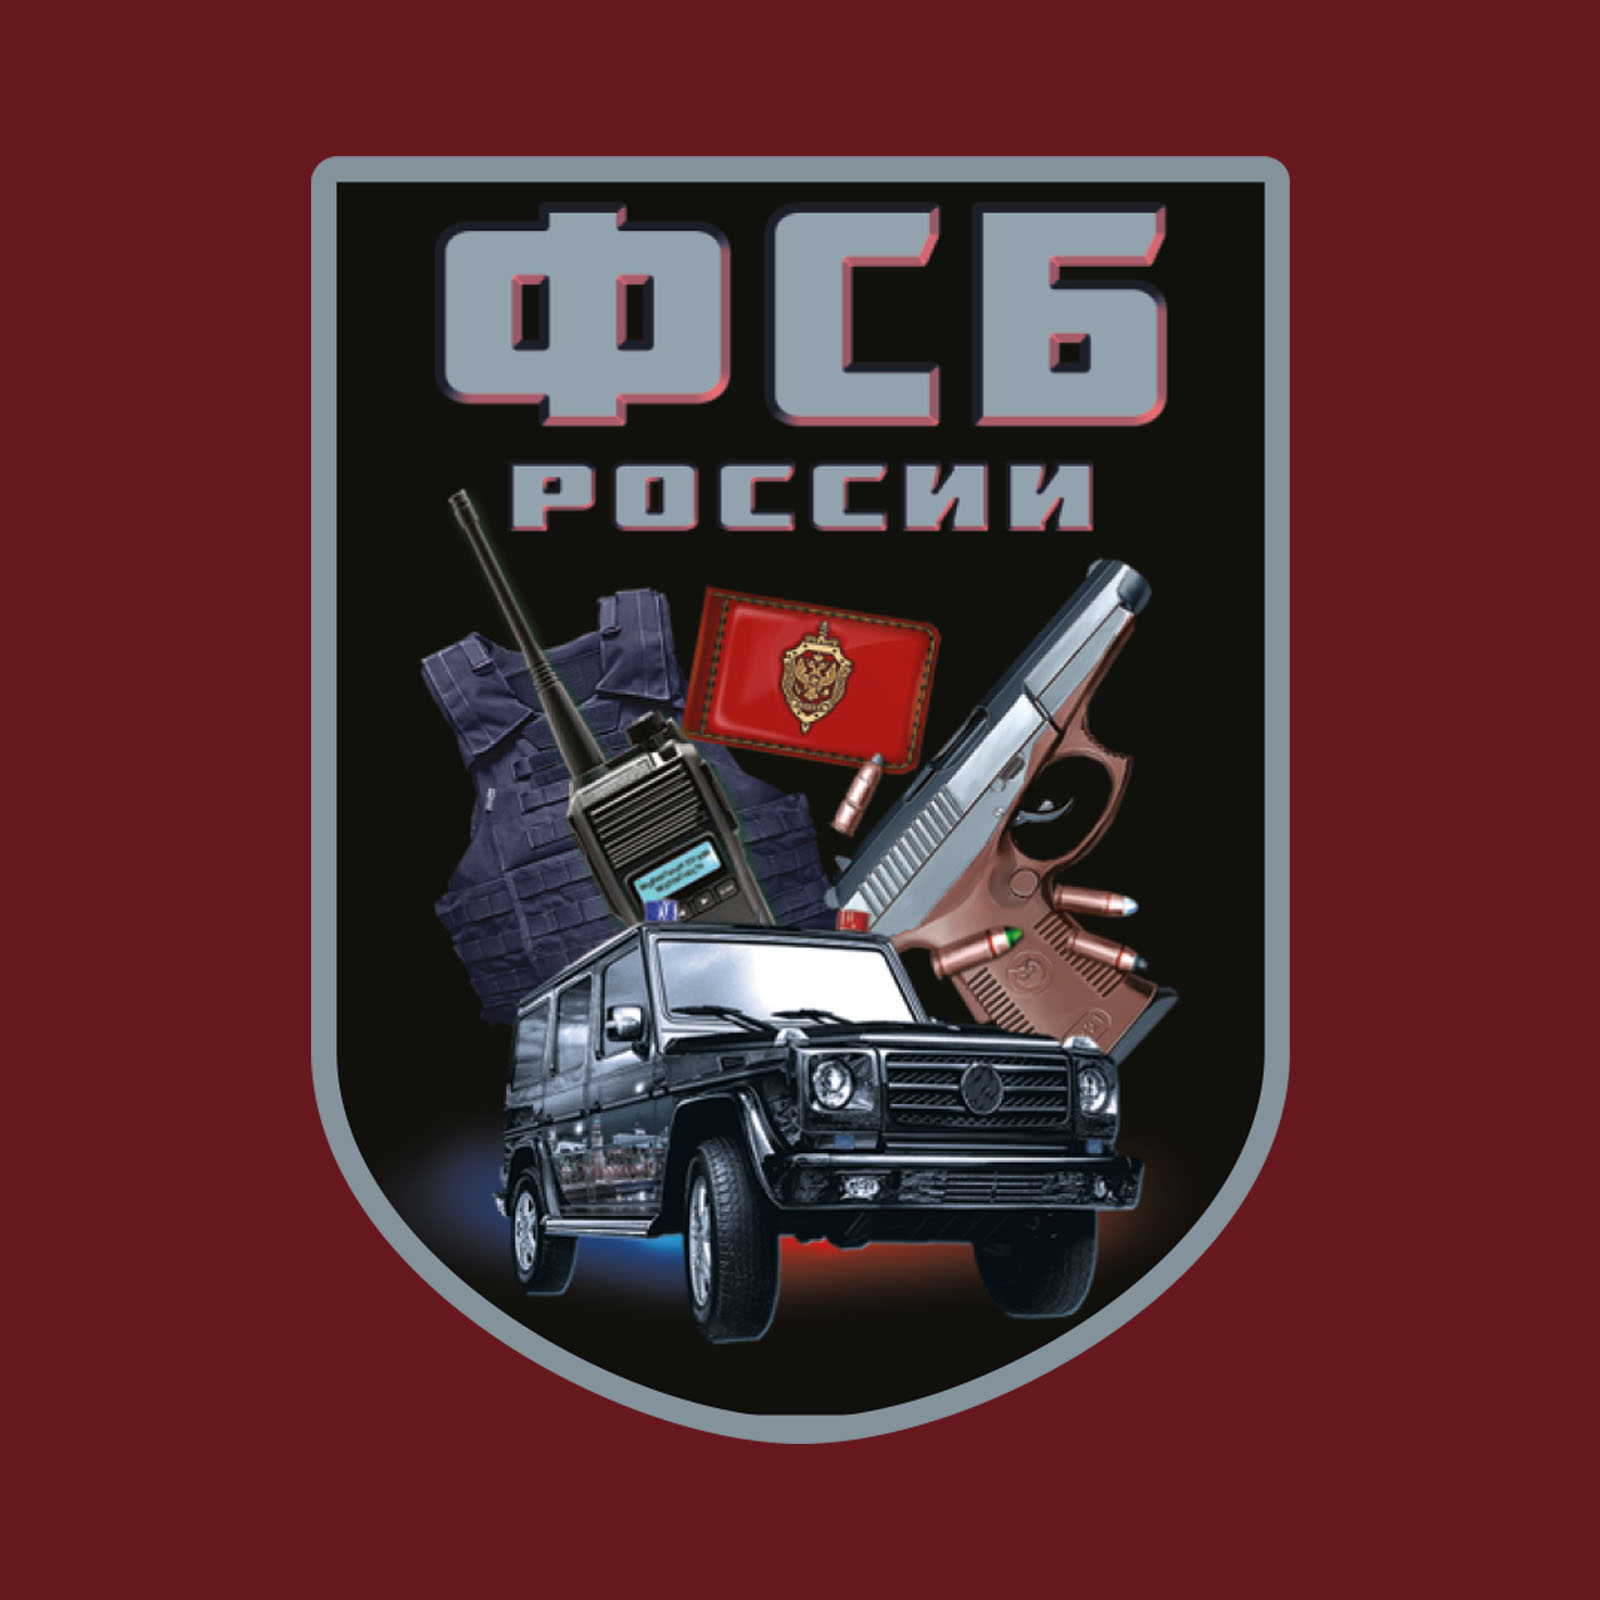 Краповая футболка с термотрансфером "ФСБ России" 